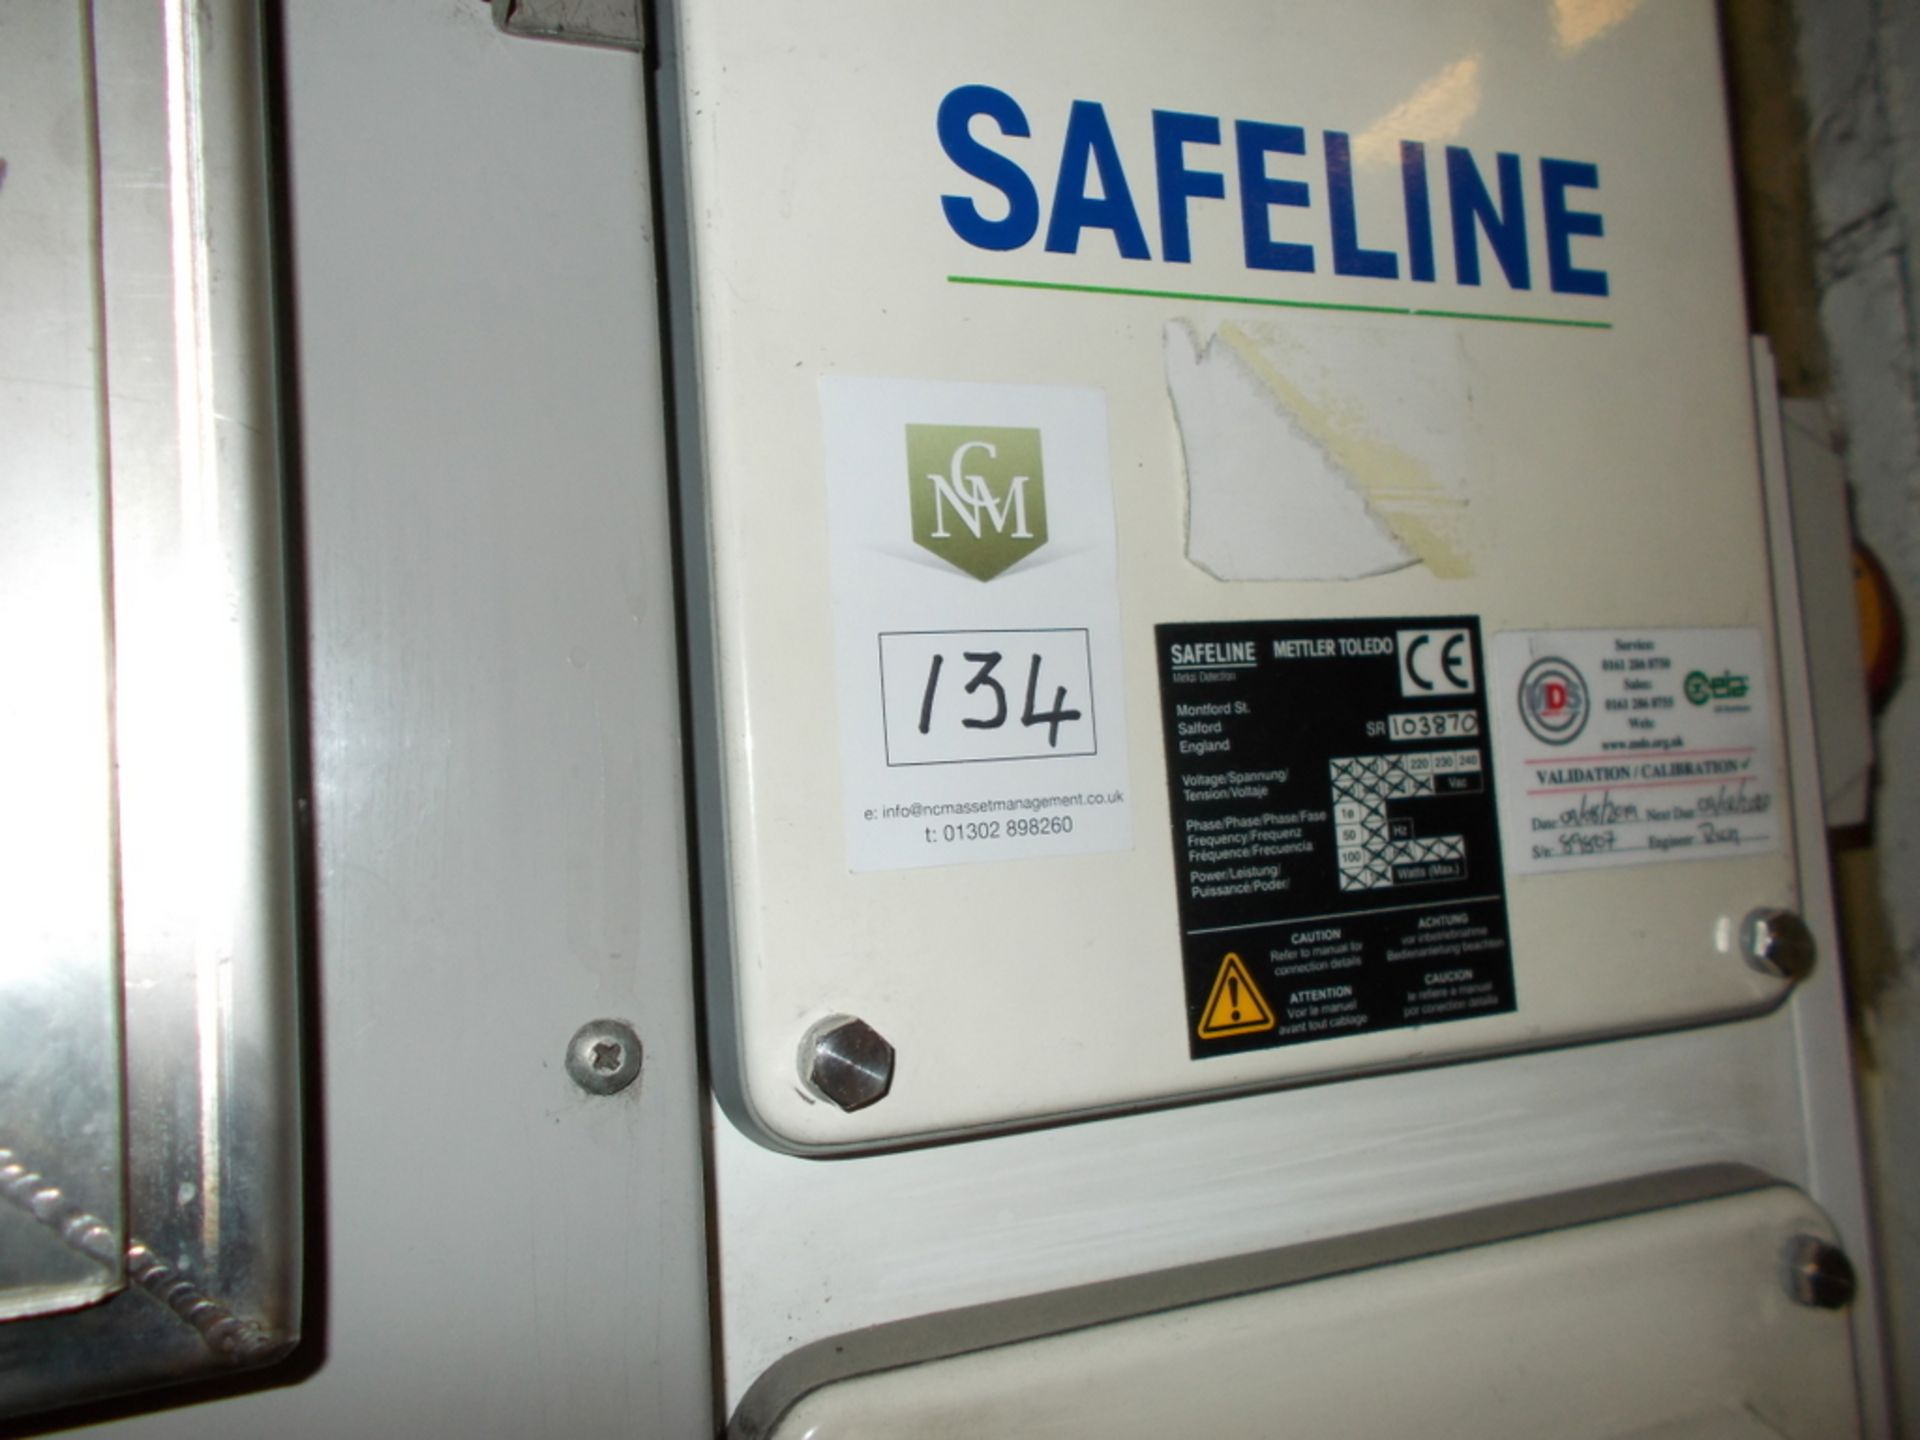 Safeline metal detector - Image 4 of 4